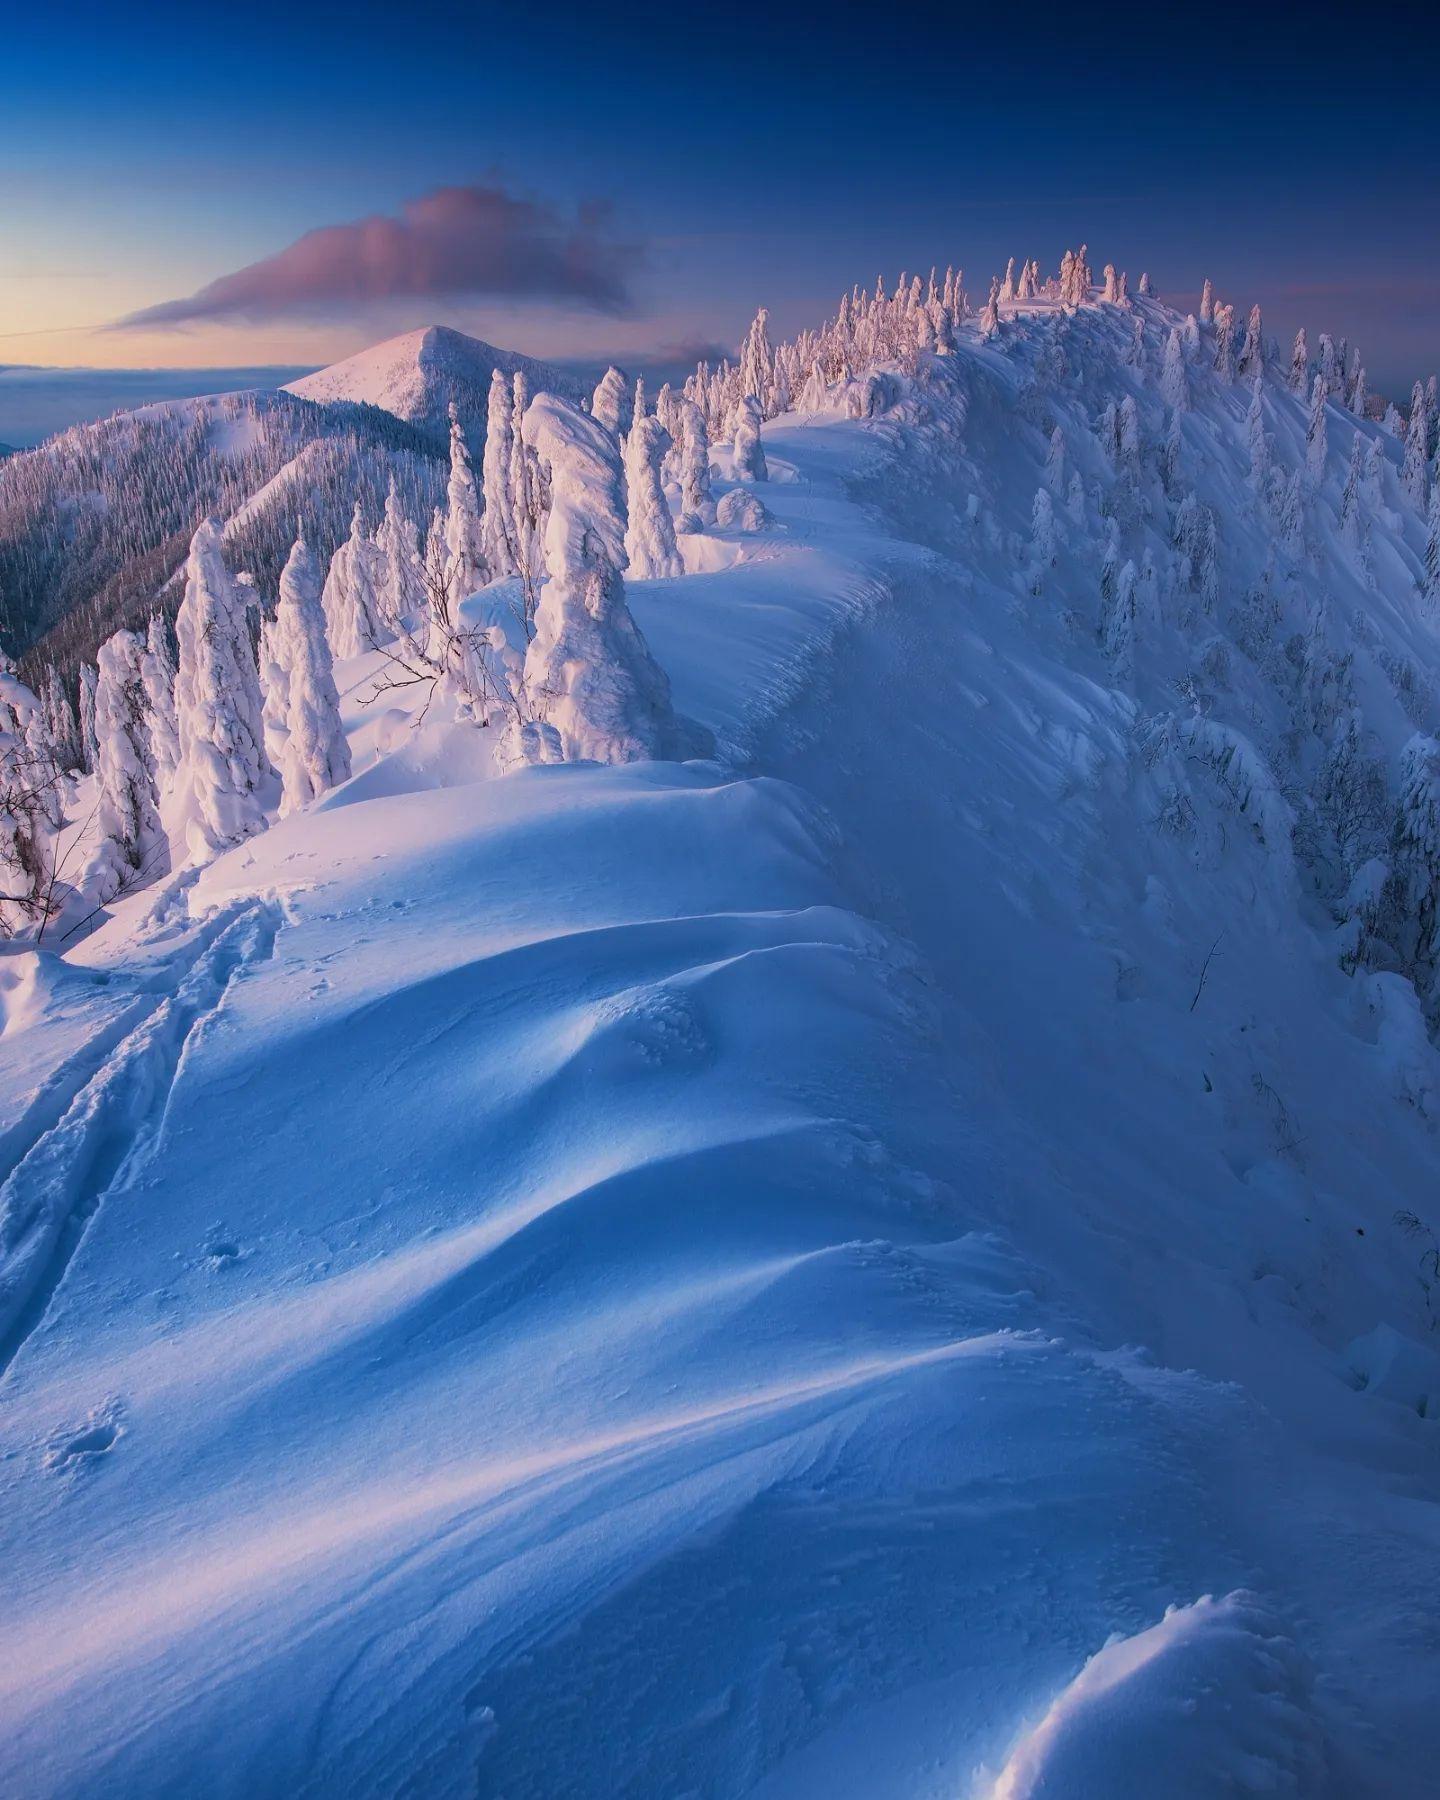  大雪覆盖的大法特拉山国家公园，Boris Michalicek摄于斯洛伐克。 